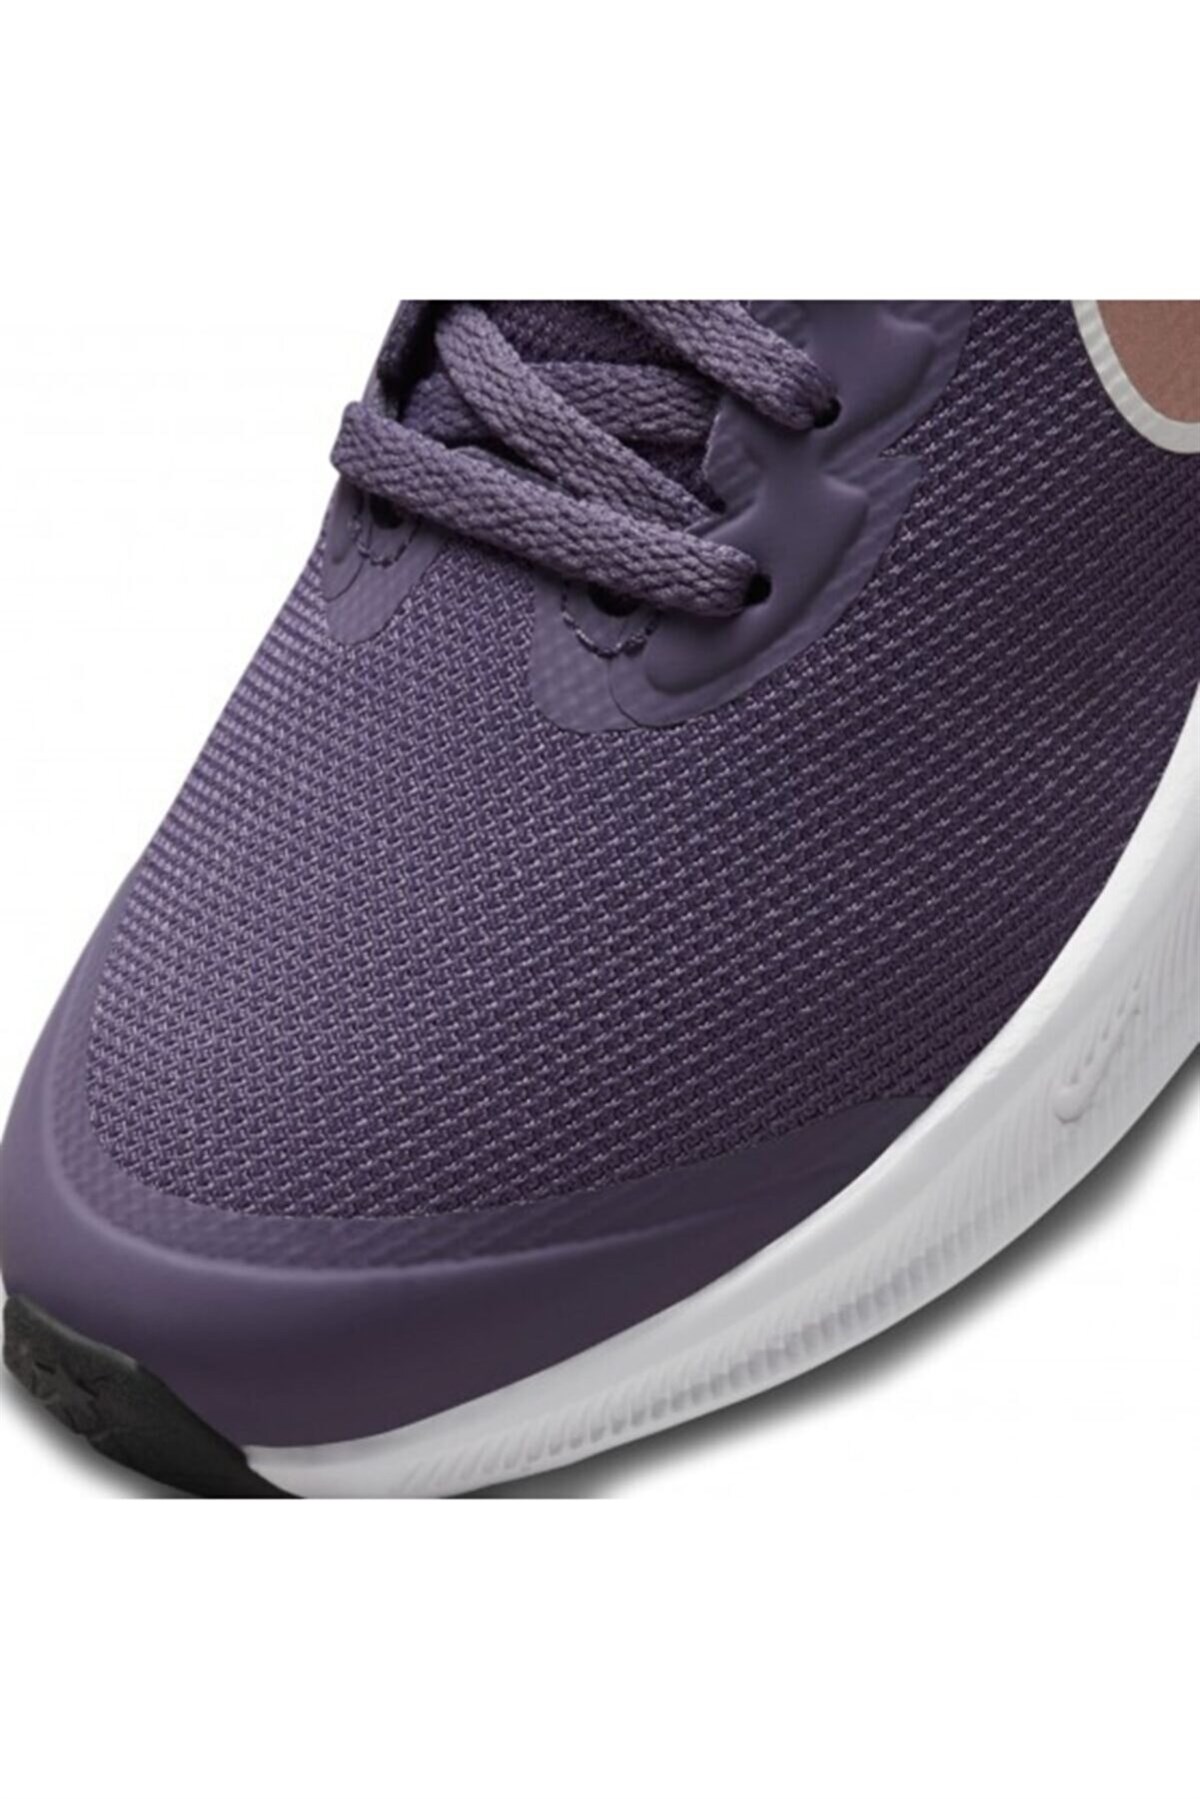 Nike Star Runner 3 (Gs) Kadın Yürüyüş Koşu Ayakkabı DA2776-501-MOR